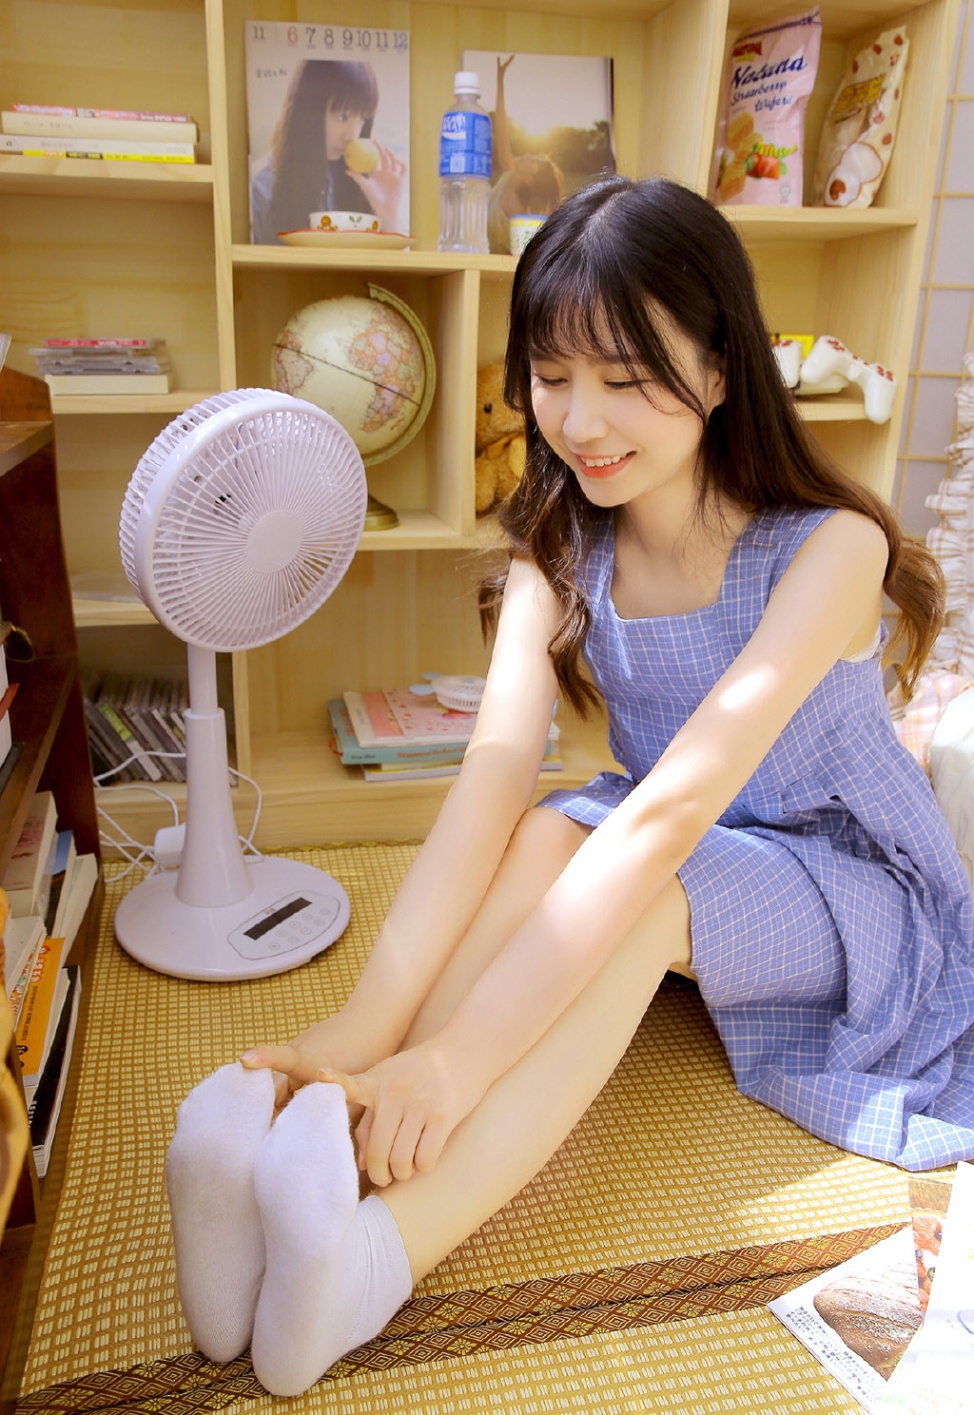 超可爱日本美少女白皙修长美腿诱惑私房照(第2页)